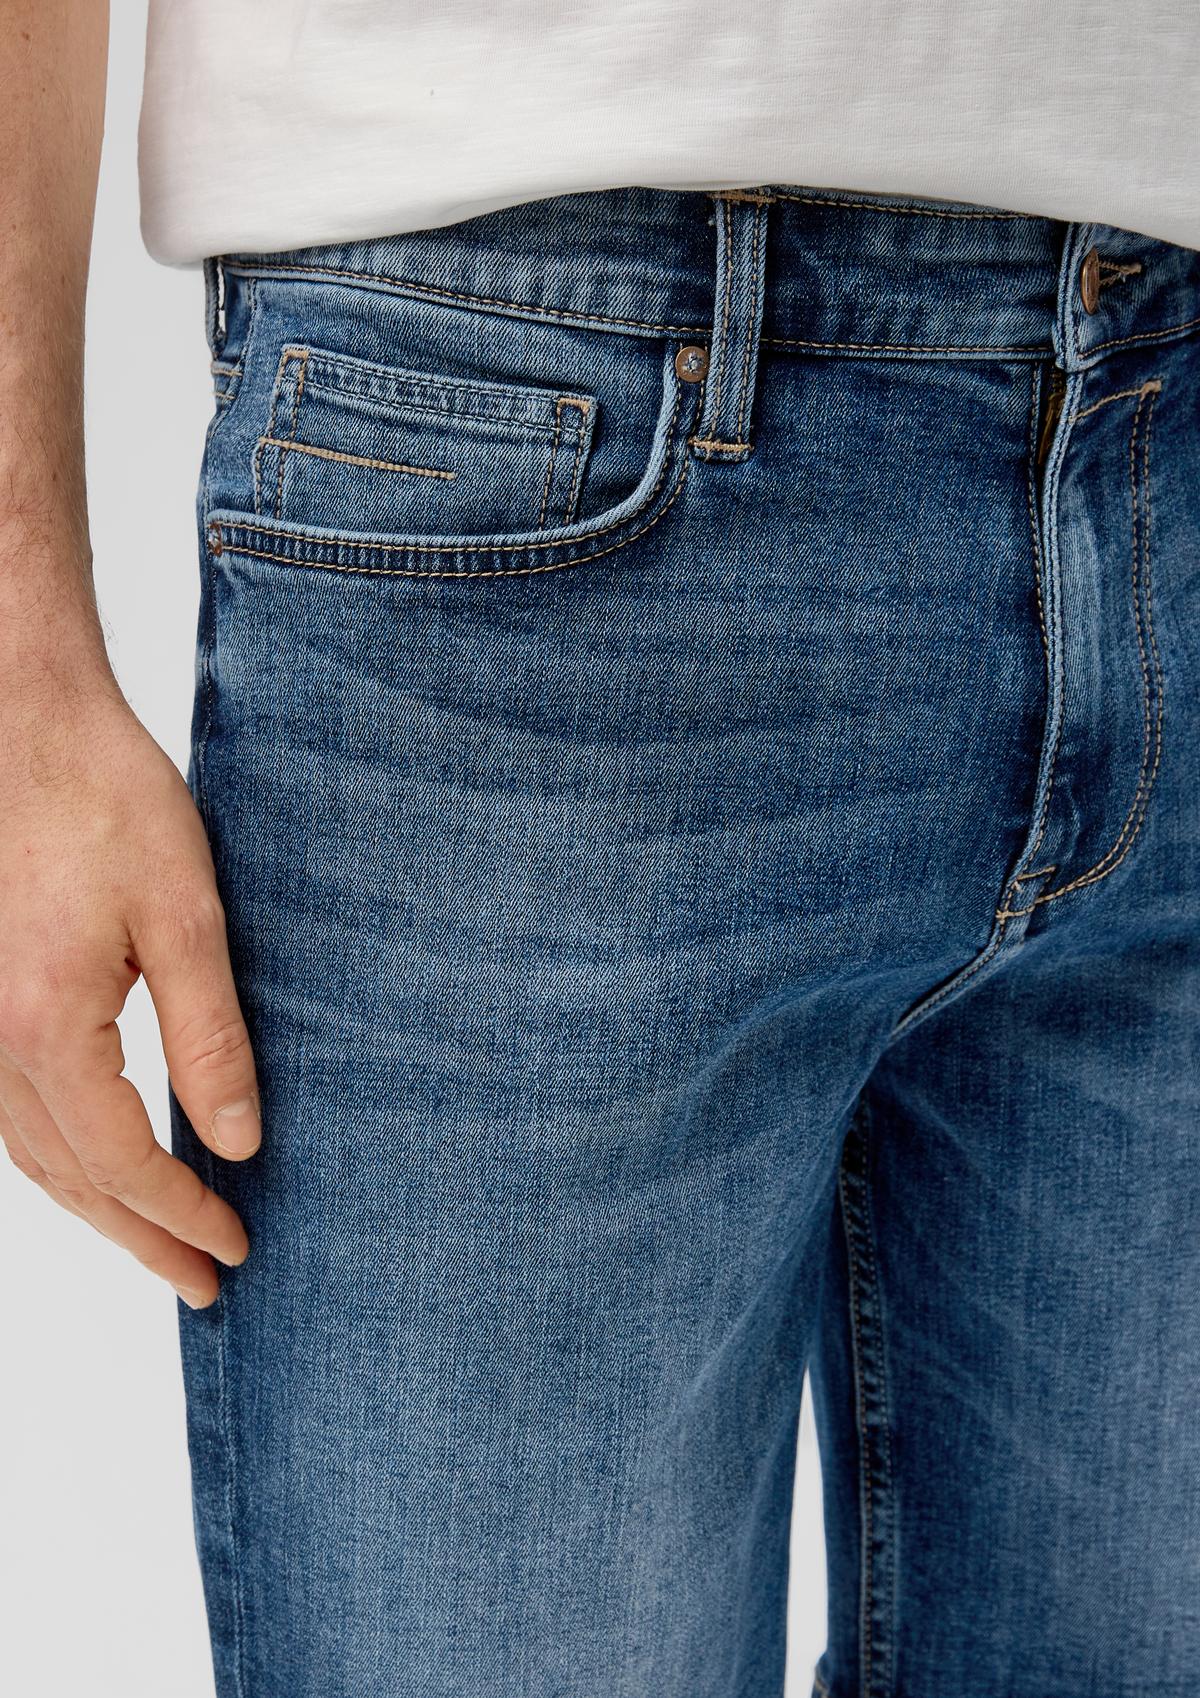 s.Oliver Jeans kratke hlače/kroj Regular Fit/Mid Rise/ravne hlačnice